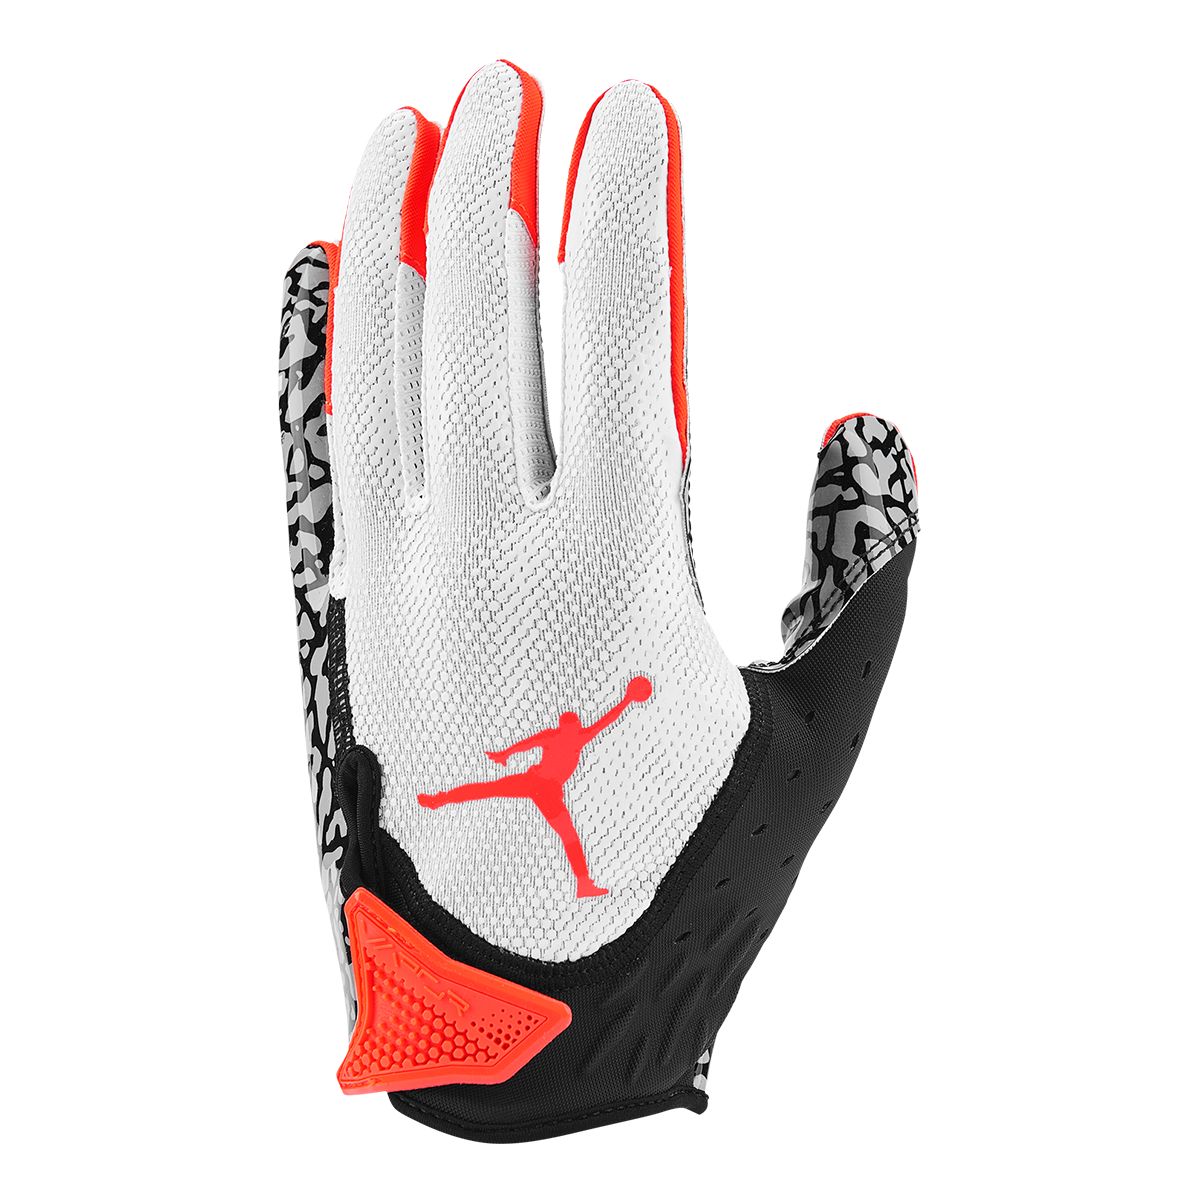 Jordan Fly Lock Football Gloves.